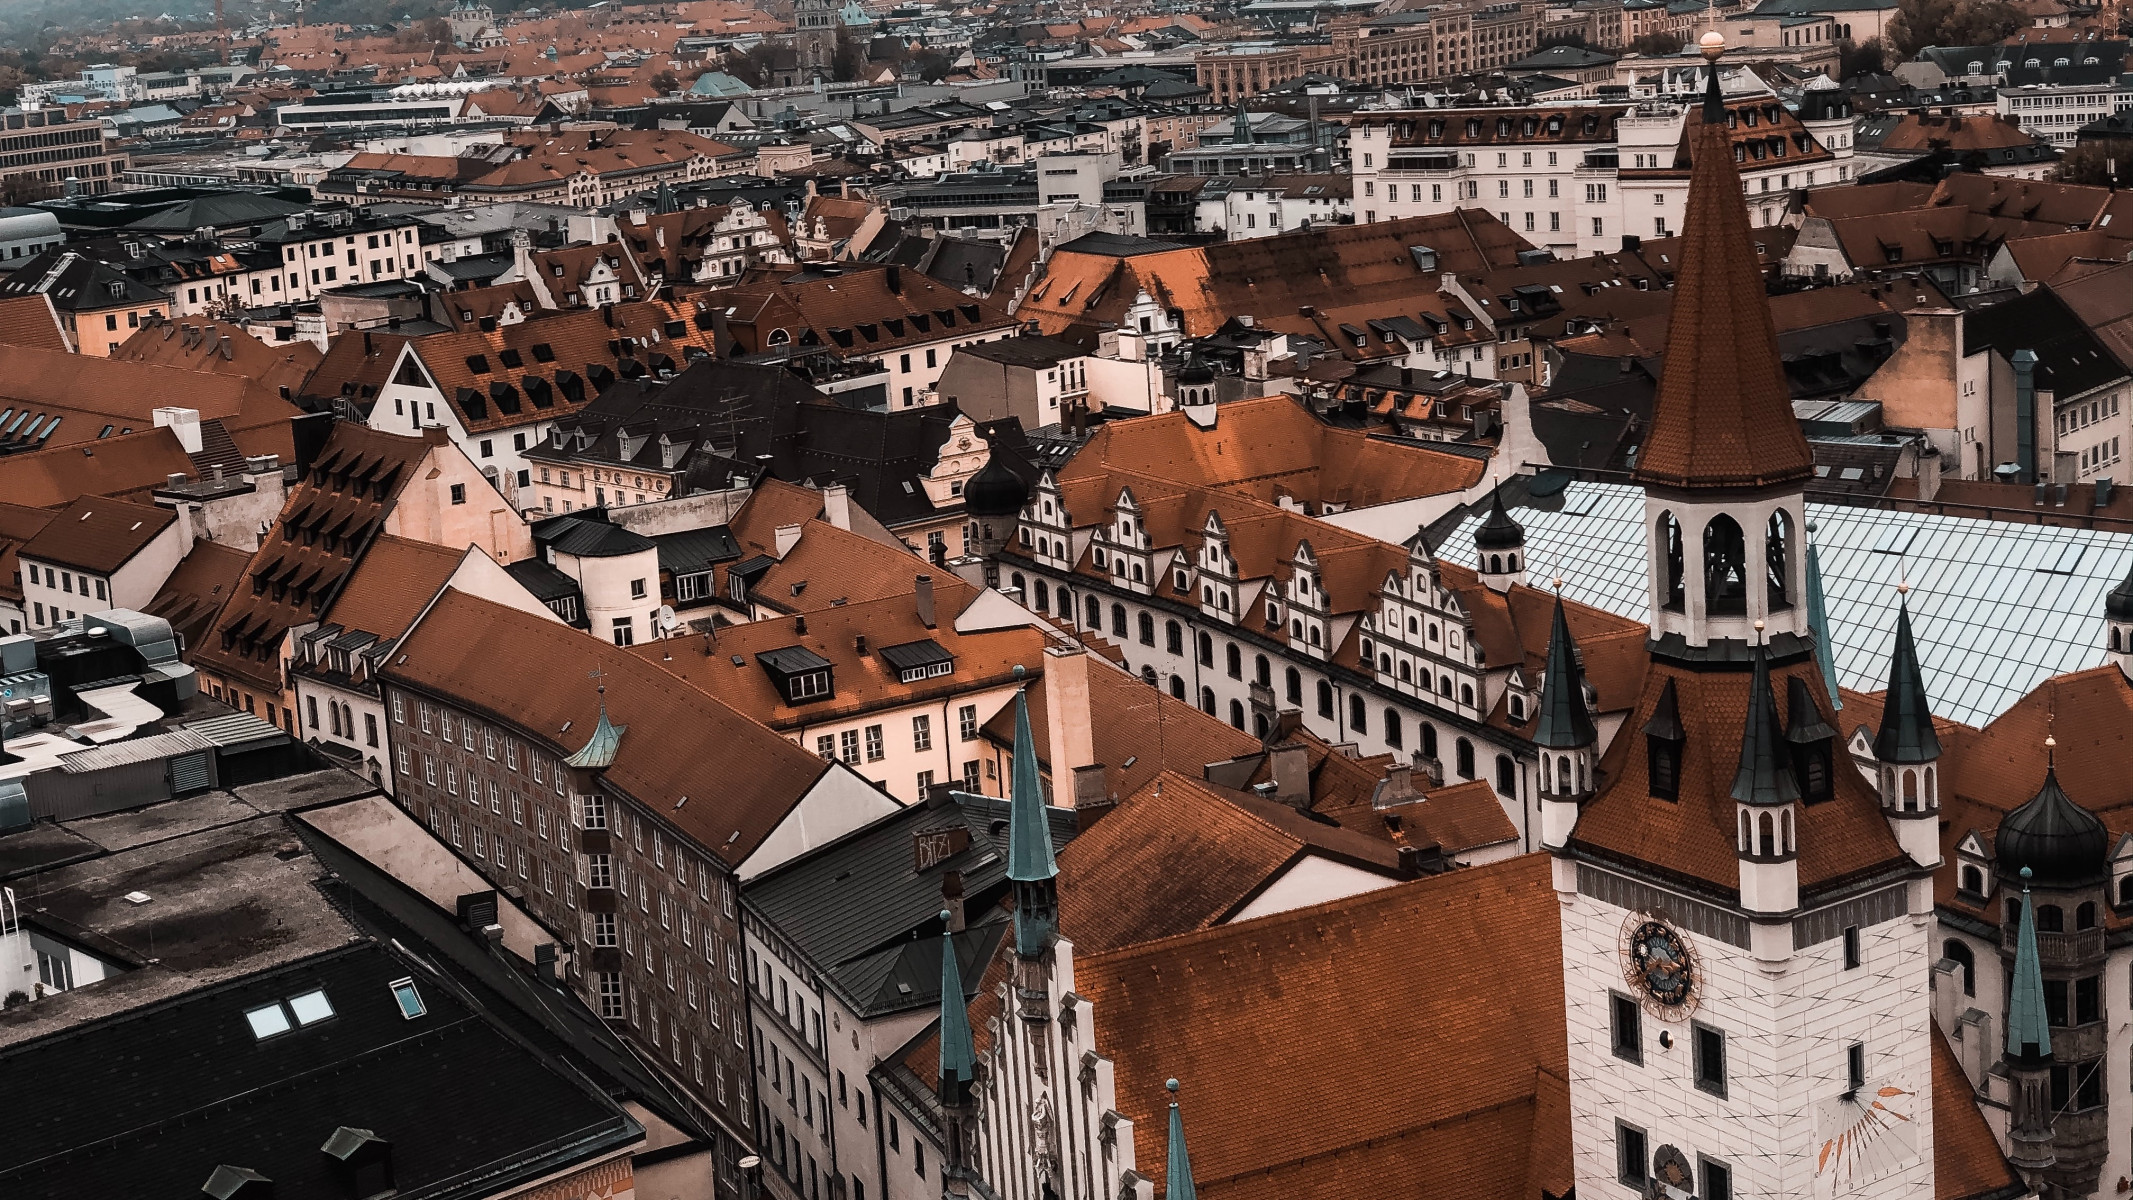 Kompaktné mesto – Bratislava zajtrajška či nedostižná utópia